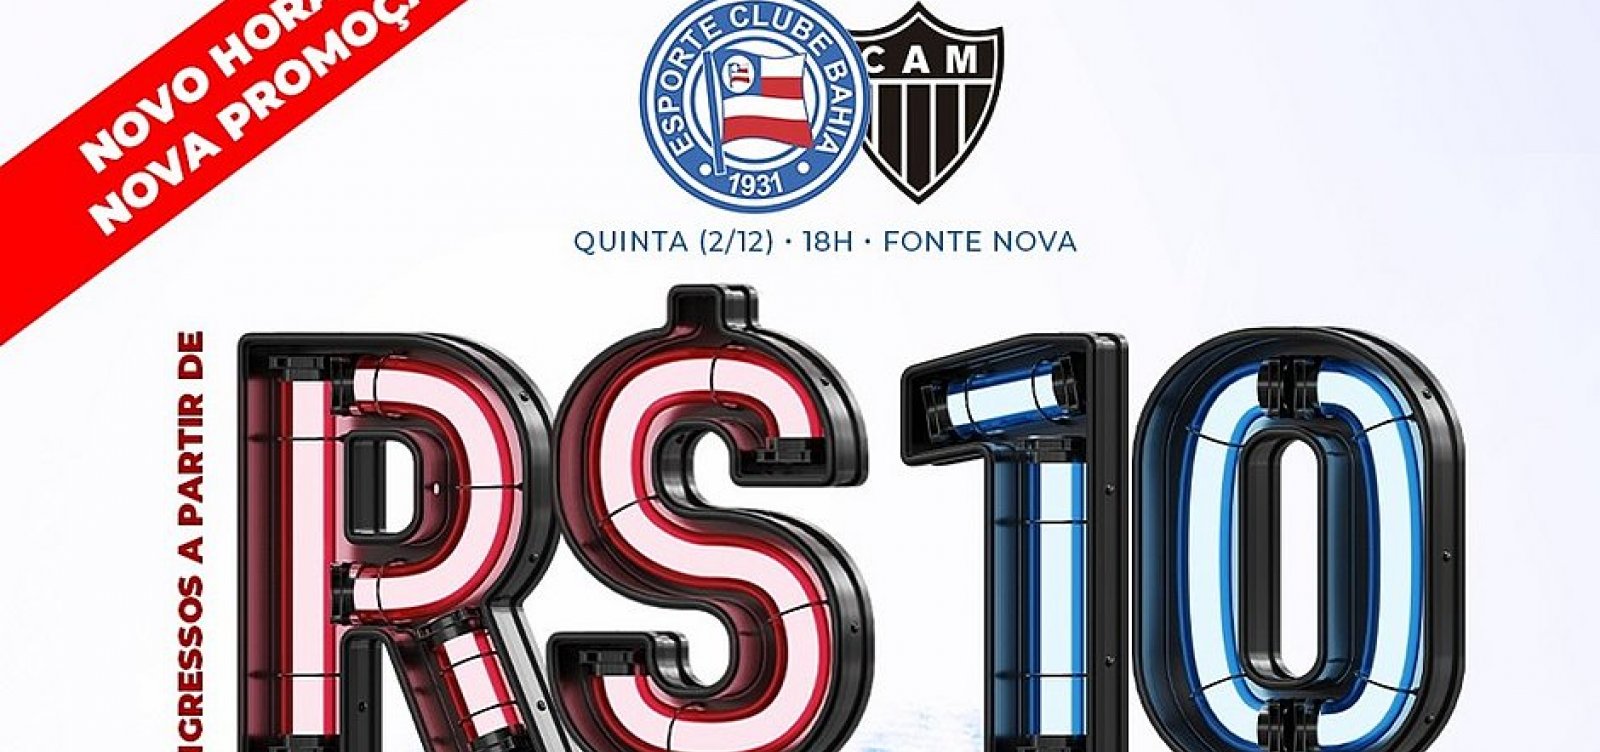 Após mudança de horário, Bahia anuncia promoção com ingressos a R$ 10